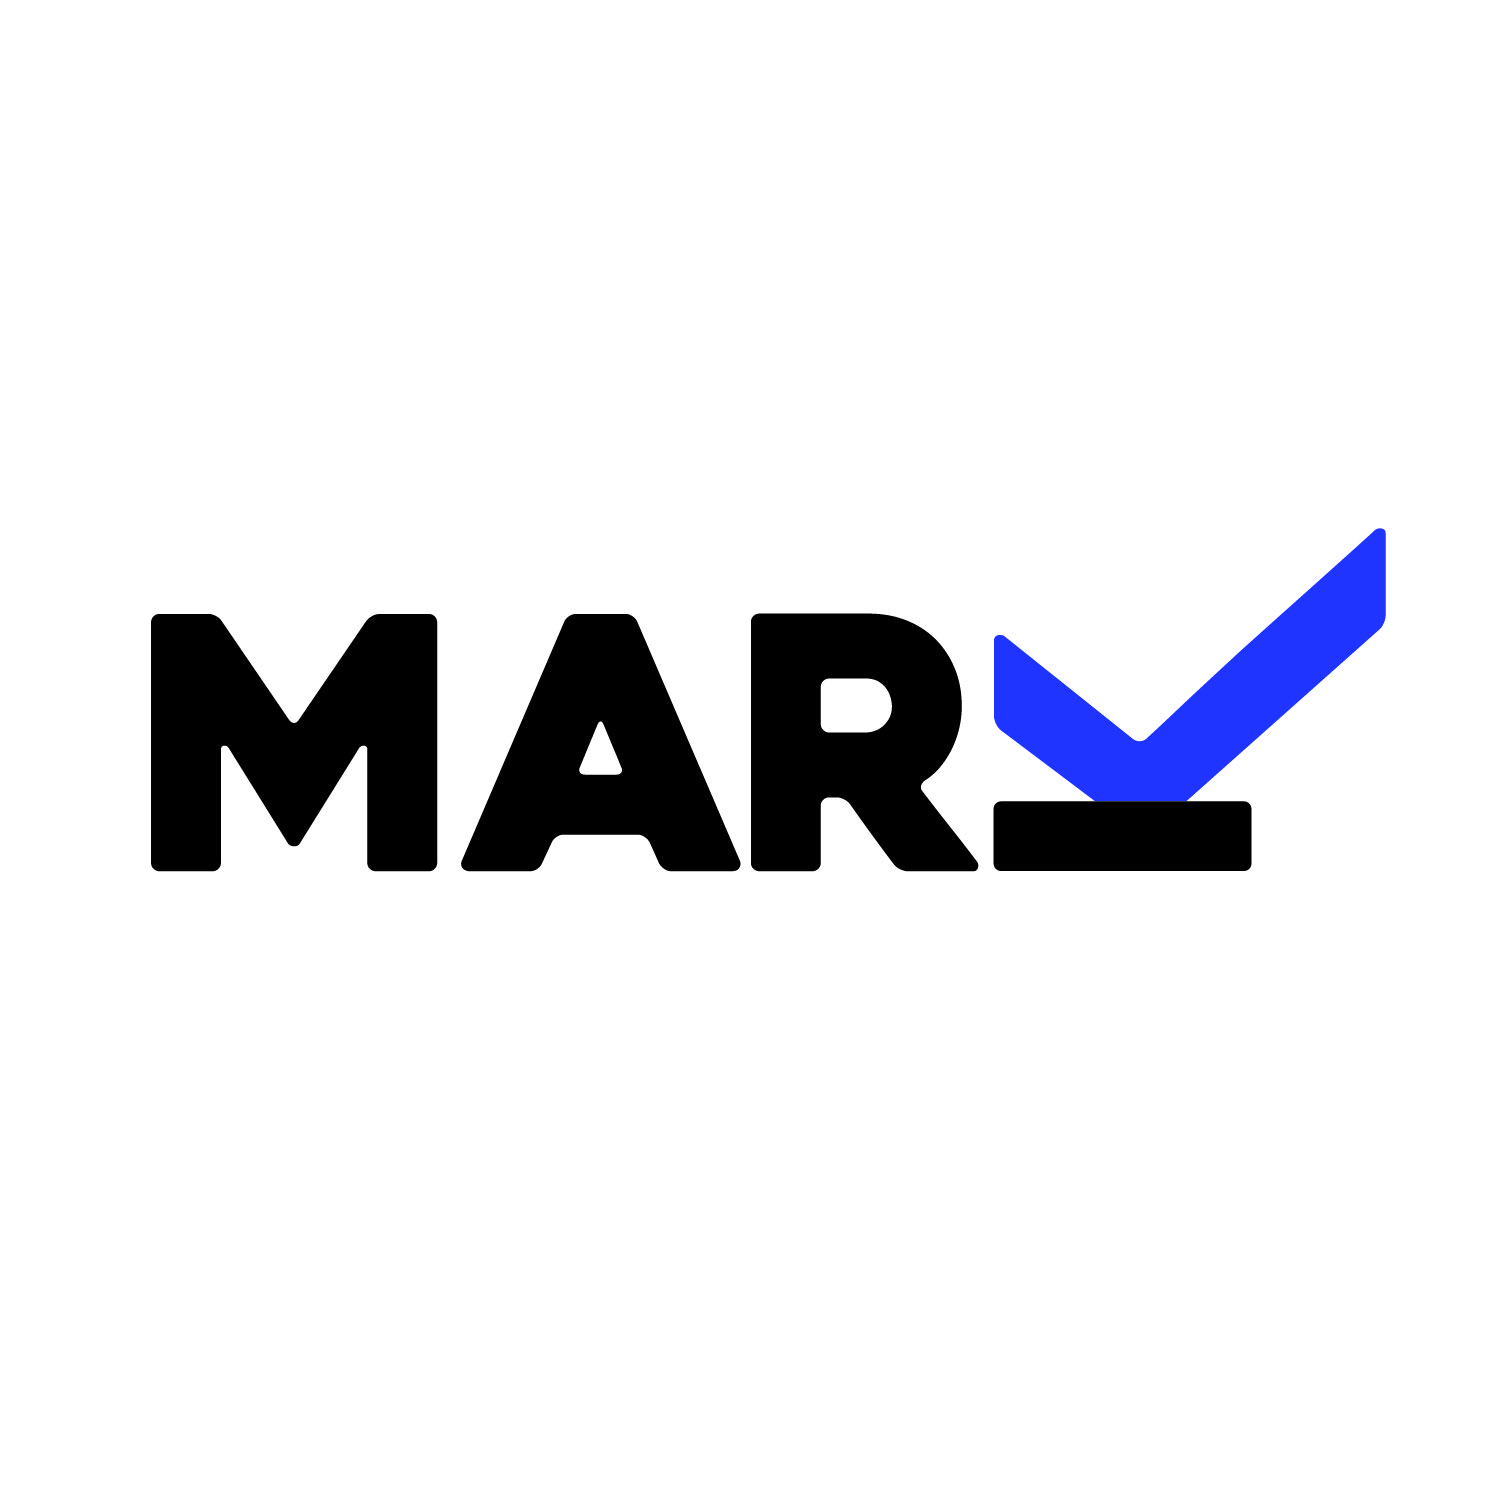 mark logo 2 01 132